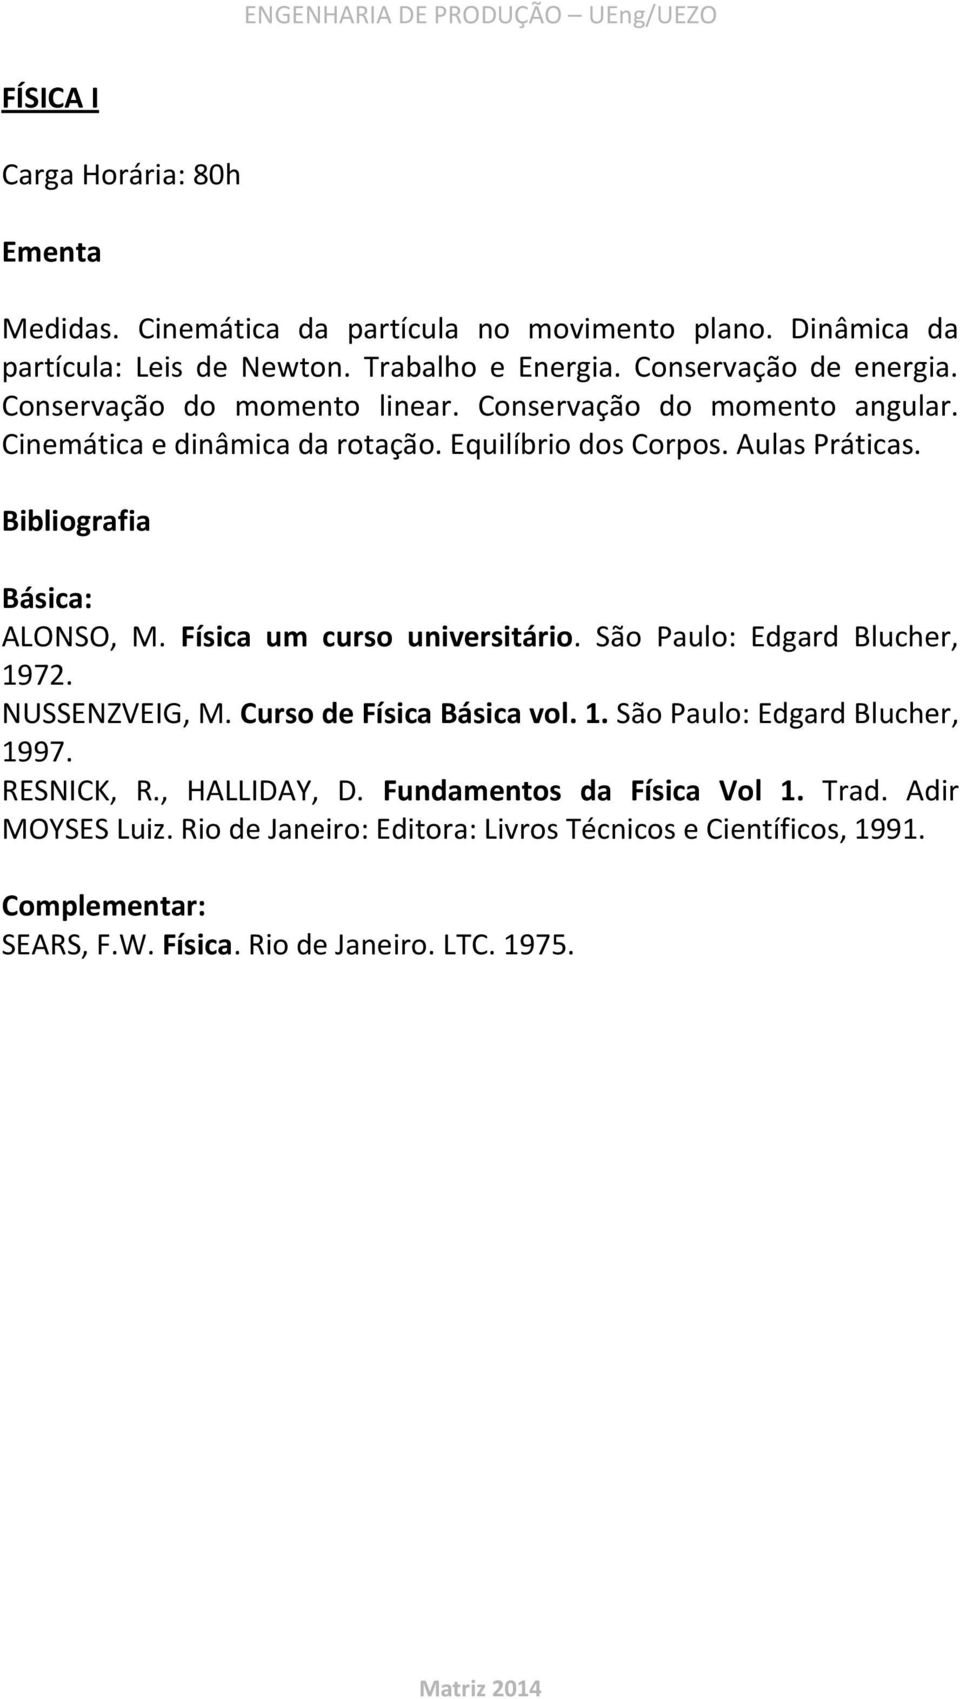 ALONSO, M. Física um curso universitário. São Paulo: Edgard Blucher, 1972. NUSSENZVEIG, M. Curso de Física Básica vol. 1. São Paulo: Edgard Blucher, 1997.